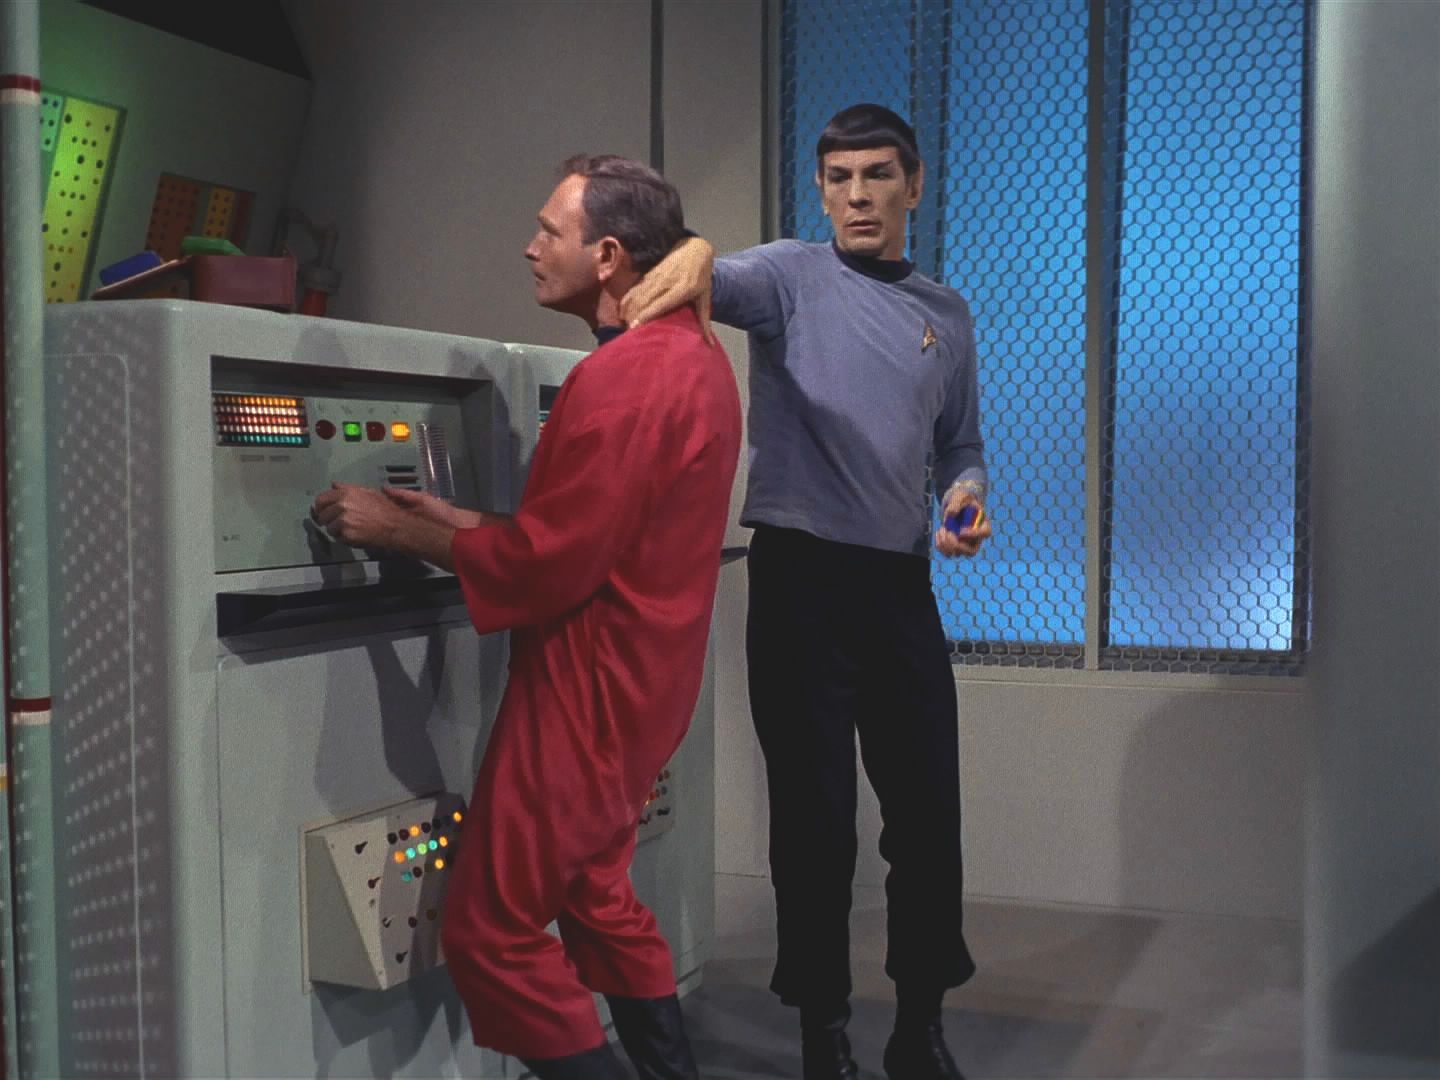 Spock čaruje s počítači, hlášeními a hlasy a zmanipuluje situaci tak, že Enterprise odlétá s kapitánem Pikem a doktorem McCoyem na palubě, zatímco Kirk zůstal na základně.